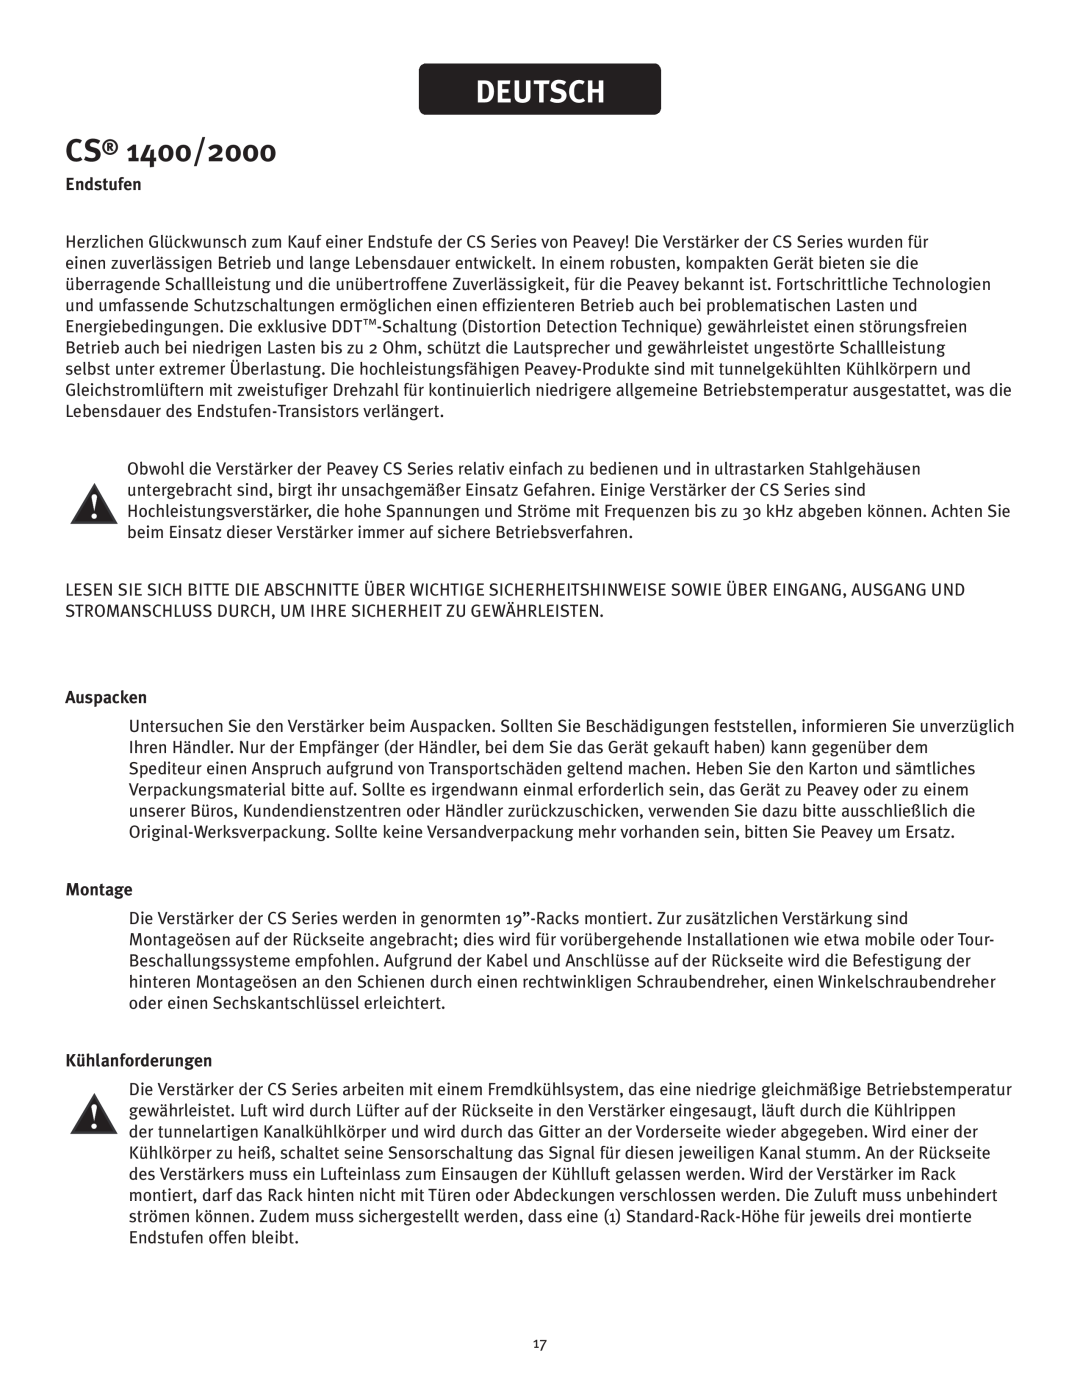 Peavey owner manual Deutsch, CS 1400/2000, Endstufen, Auspacken, Montage, Kühlanforderungen 